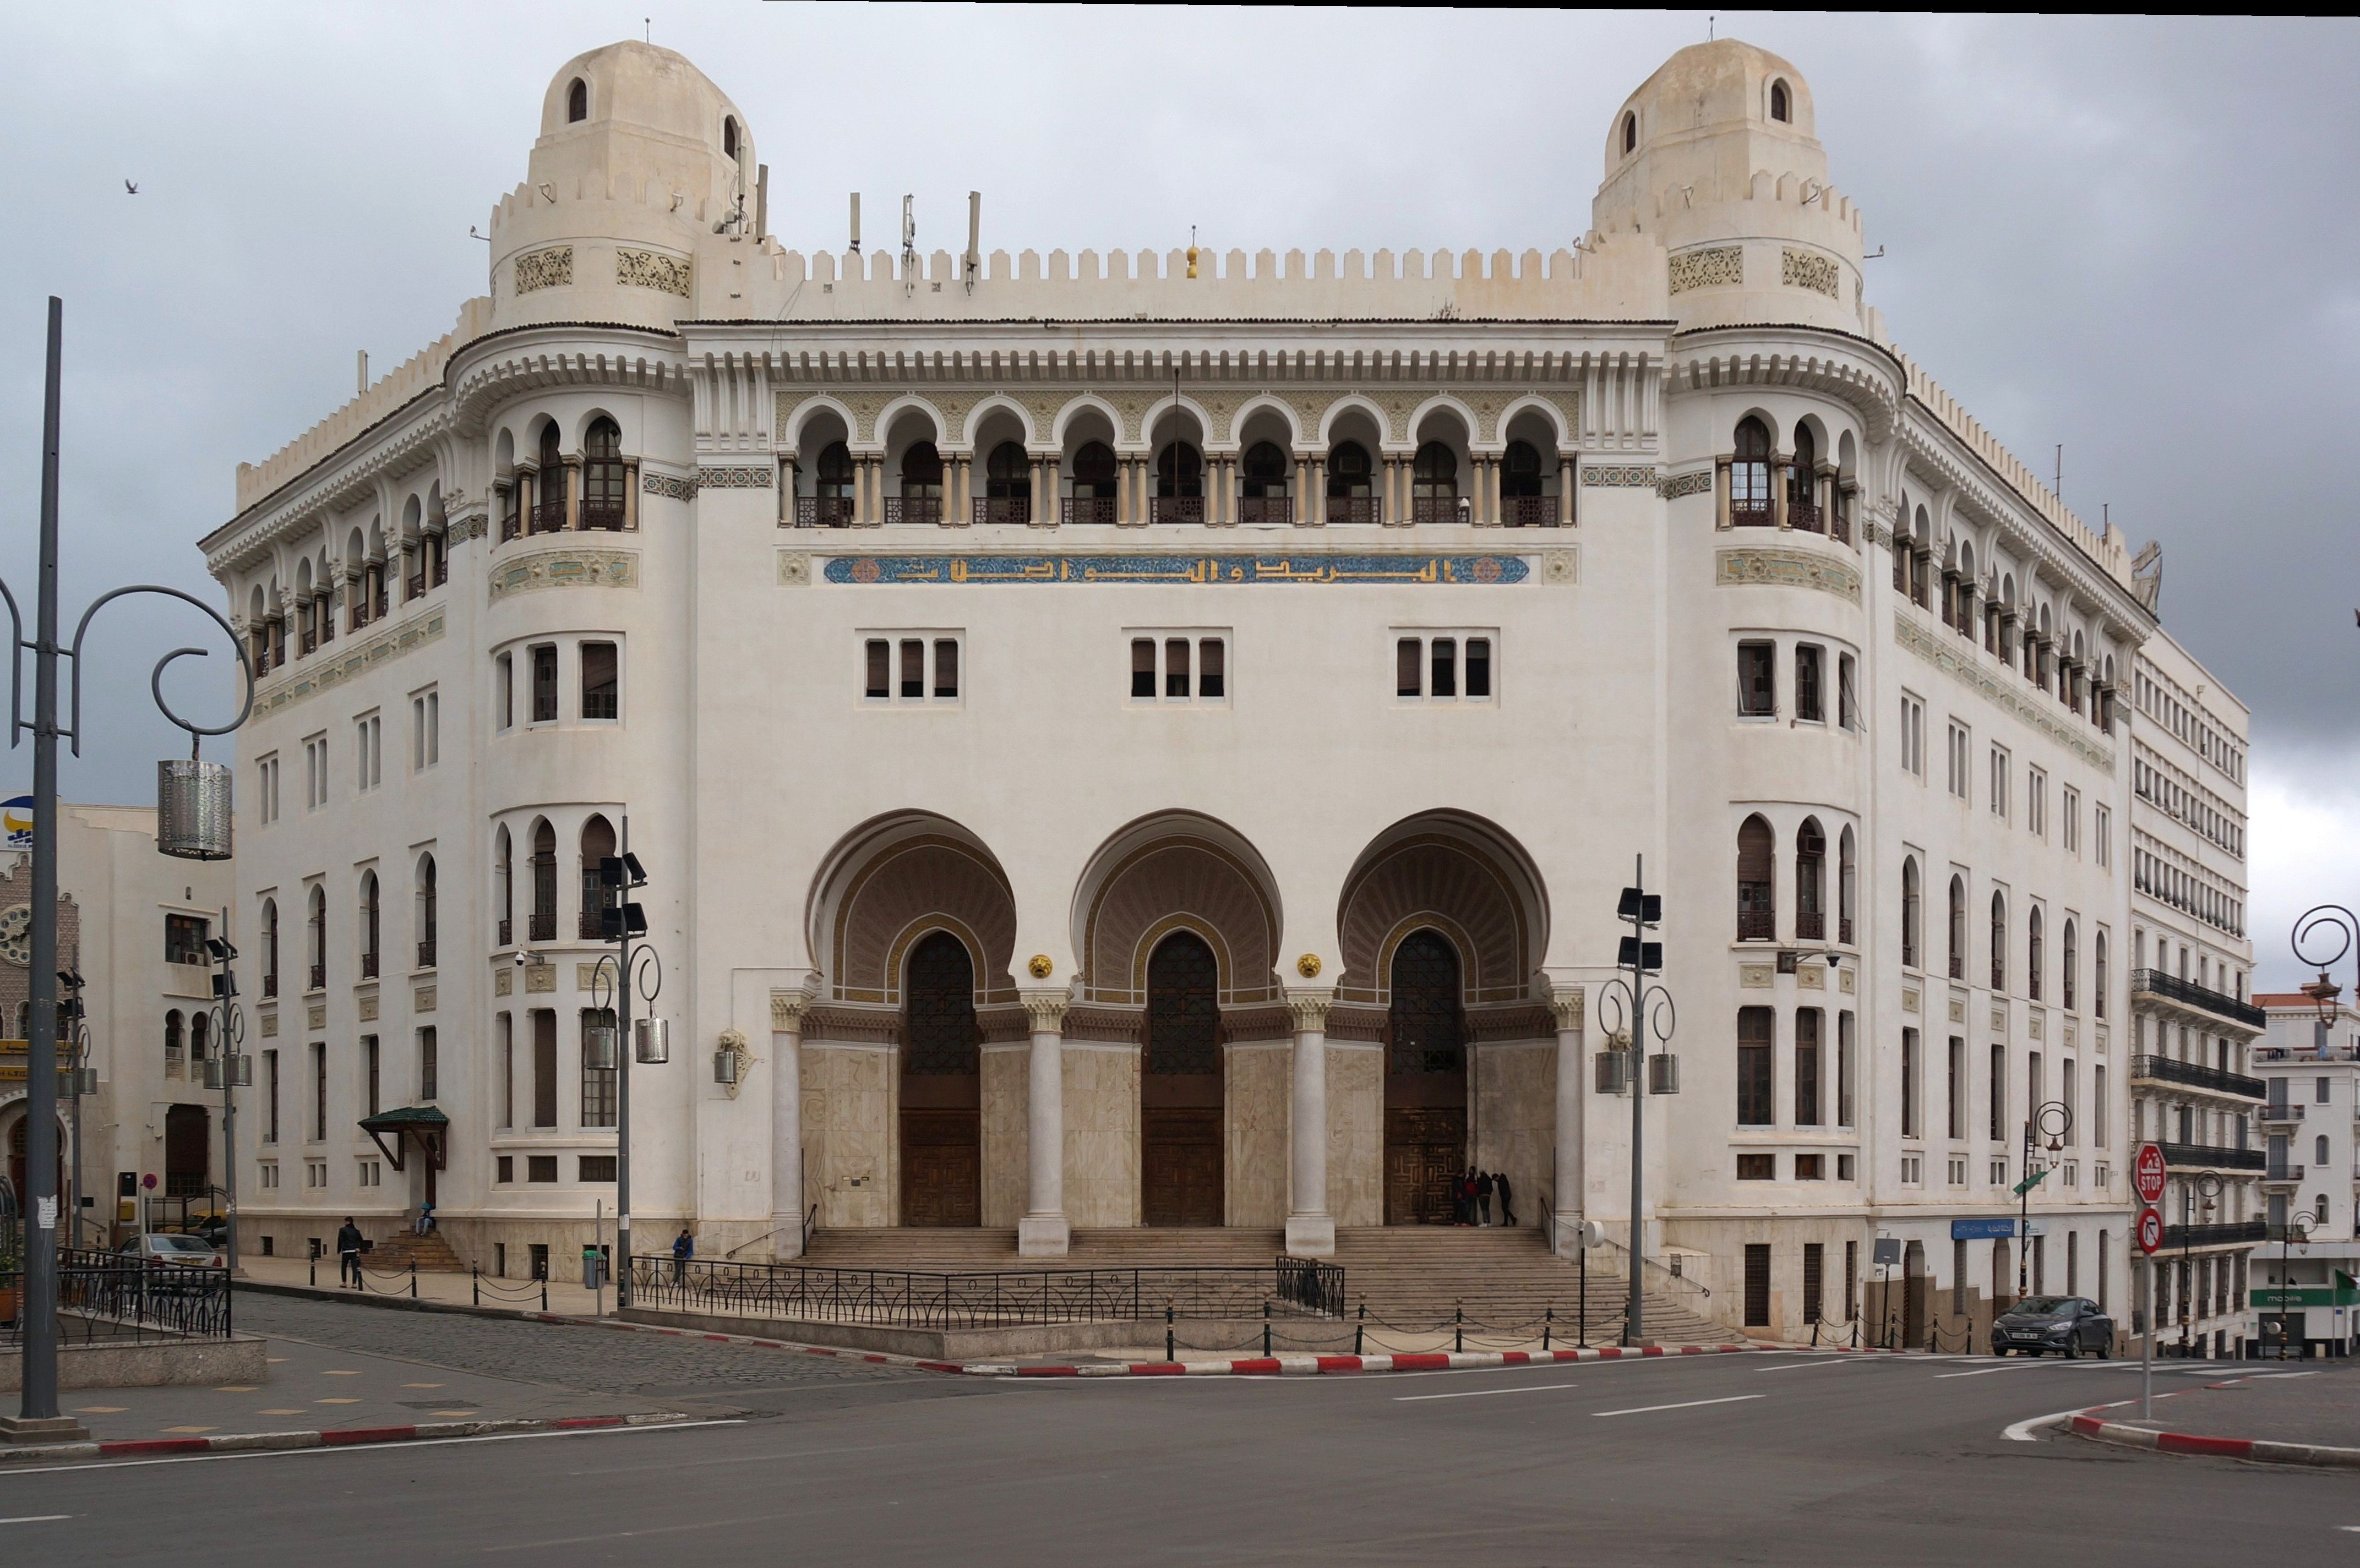 Alger Centre - Grande Poste
Mots-clés: Alger Algérie Cite Diar El Khaloua DZA geo:lat=36.77308211 geo:lon=3.05879093 geotagged L’Agha DZ Jardin de la grande poste Grande Poste